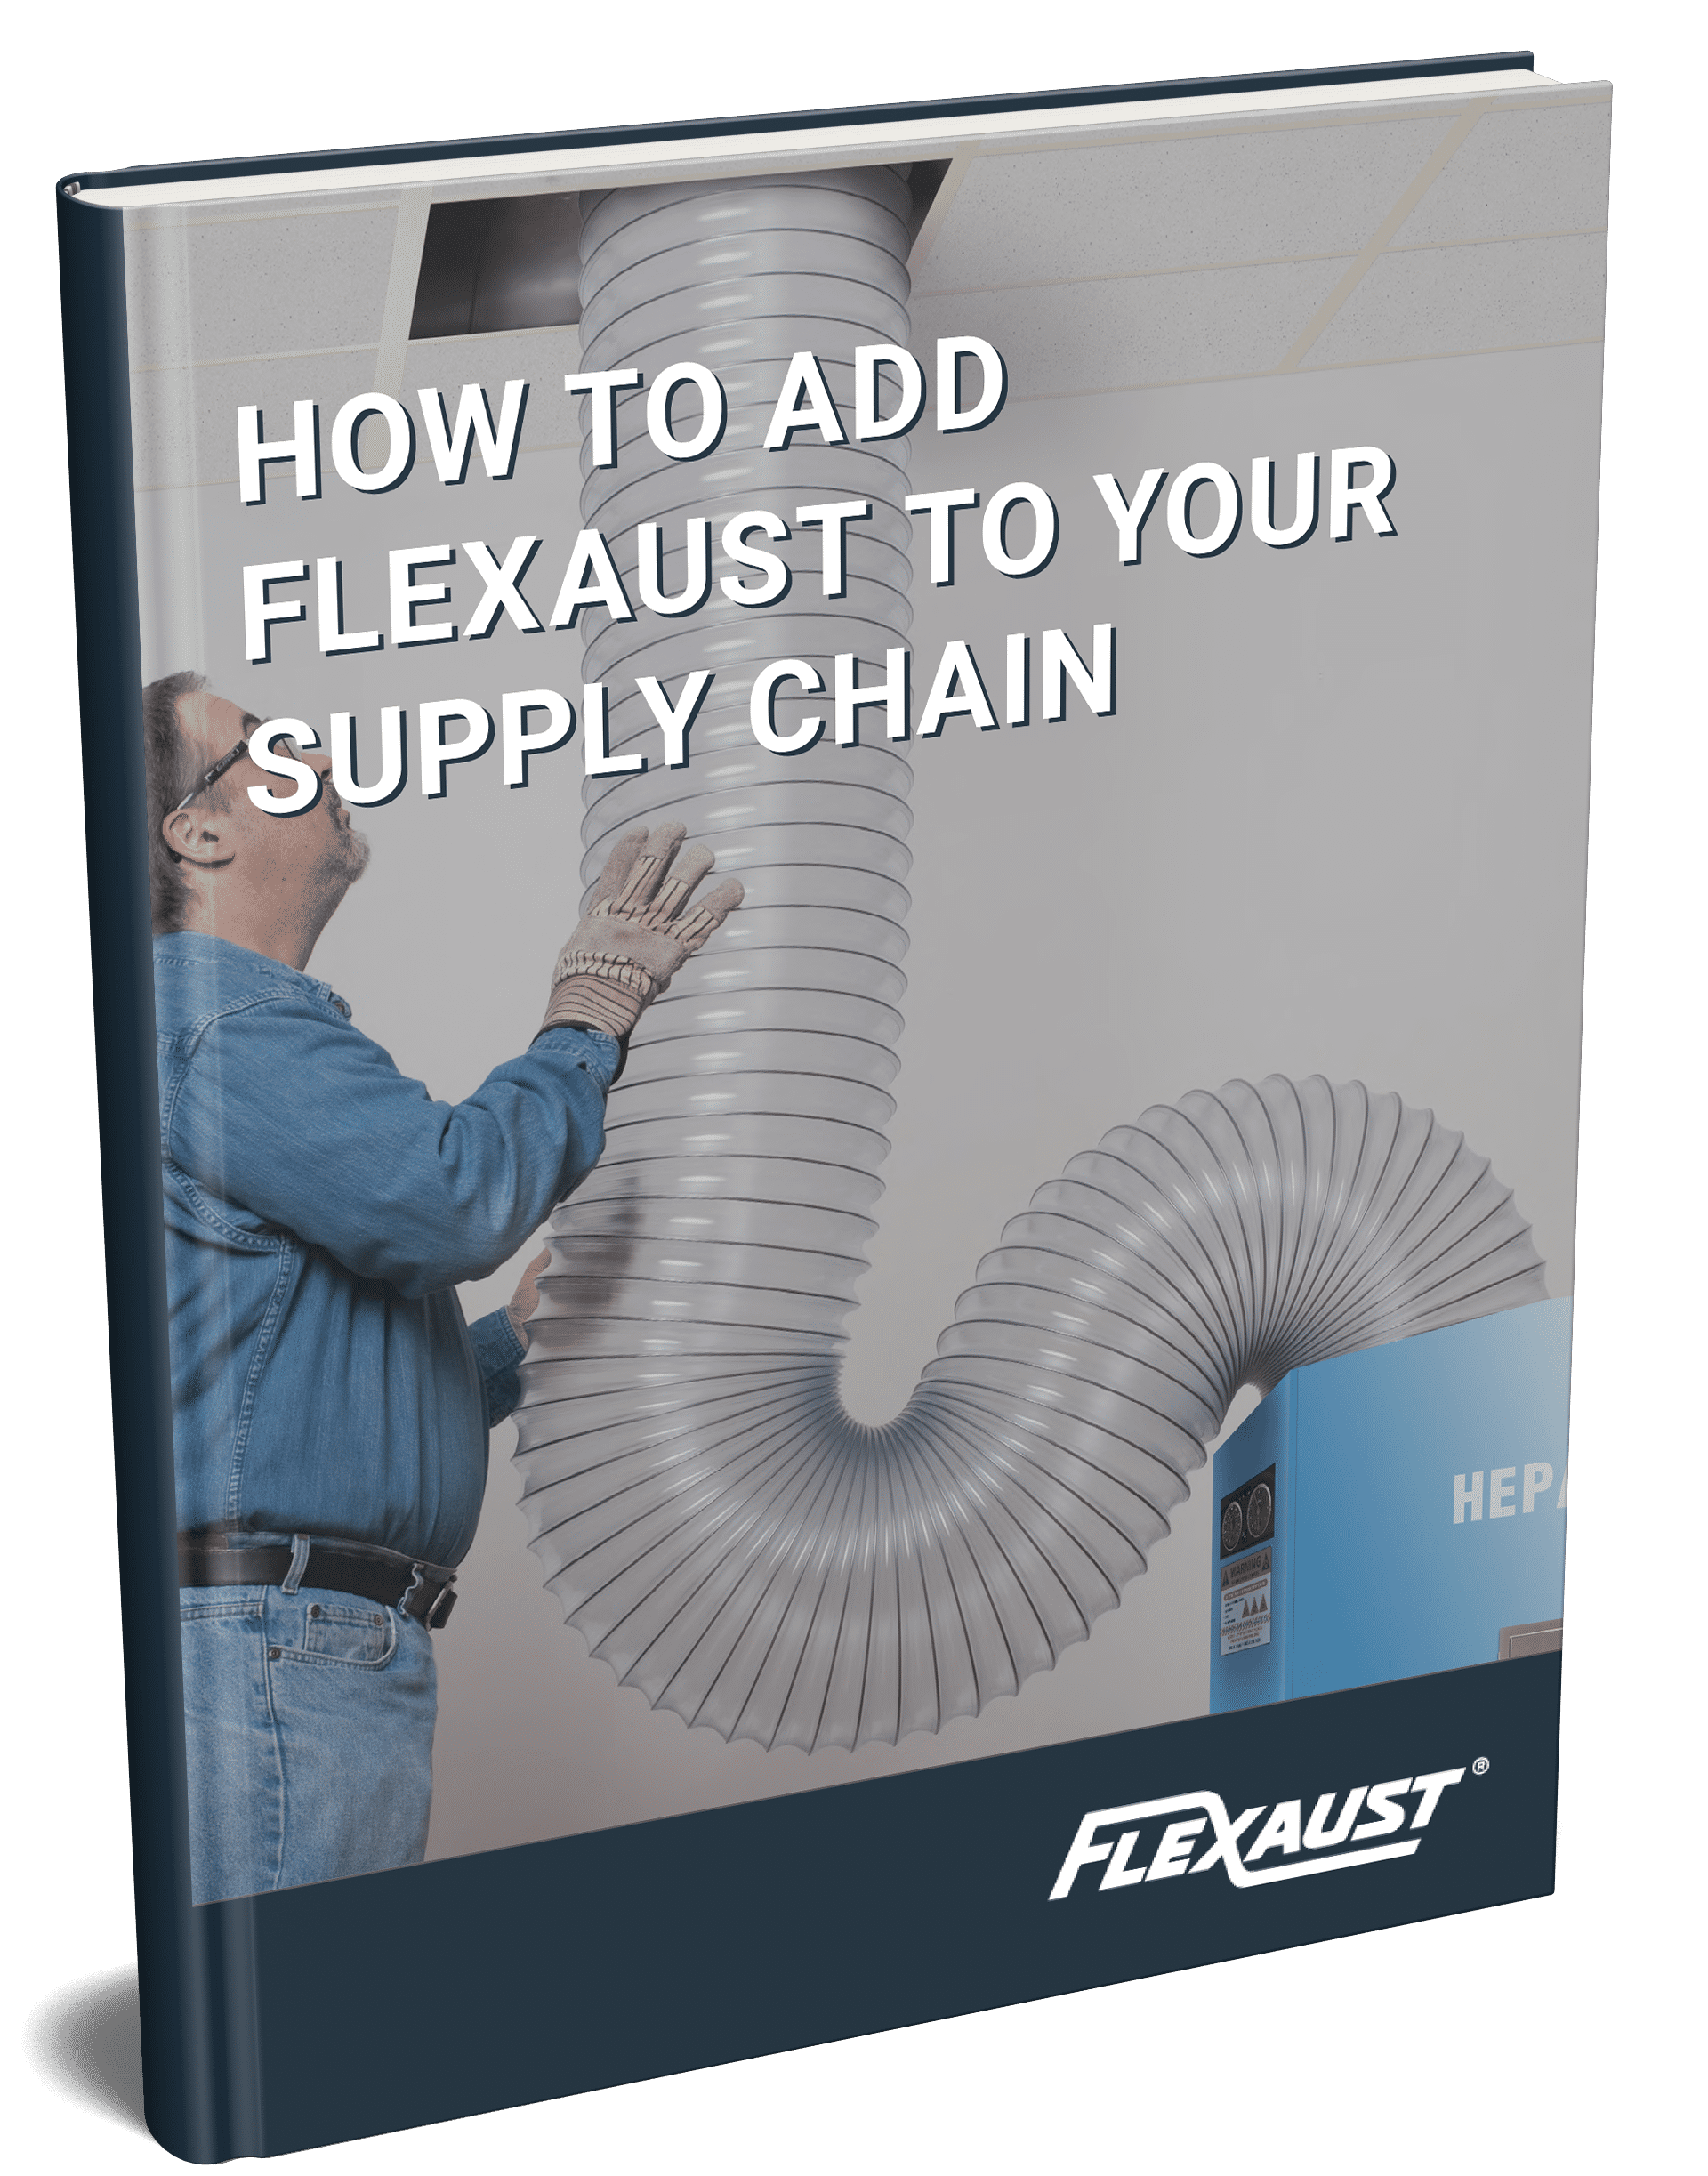 Portada del libro electrónico Cómo agregar Flexaust a su cadena de suministro